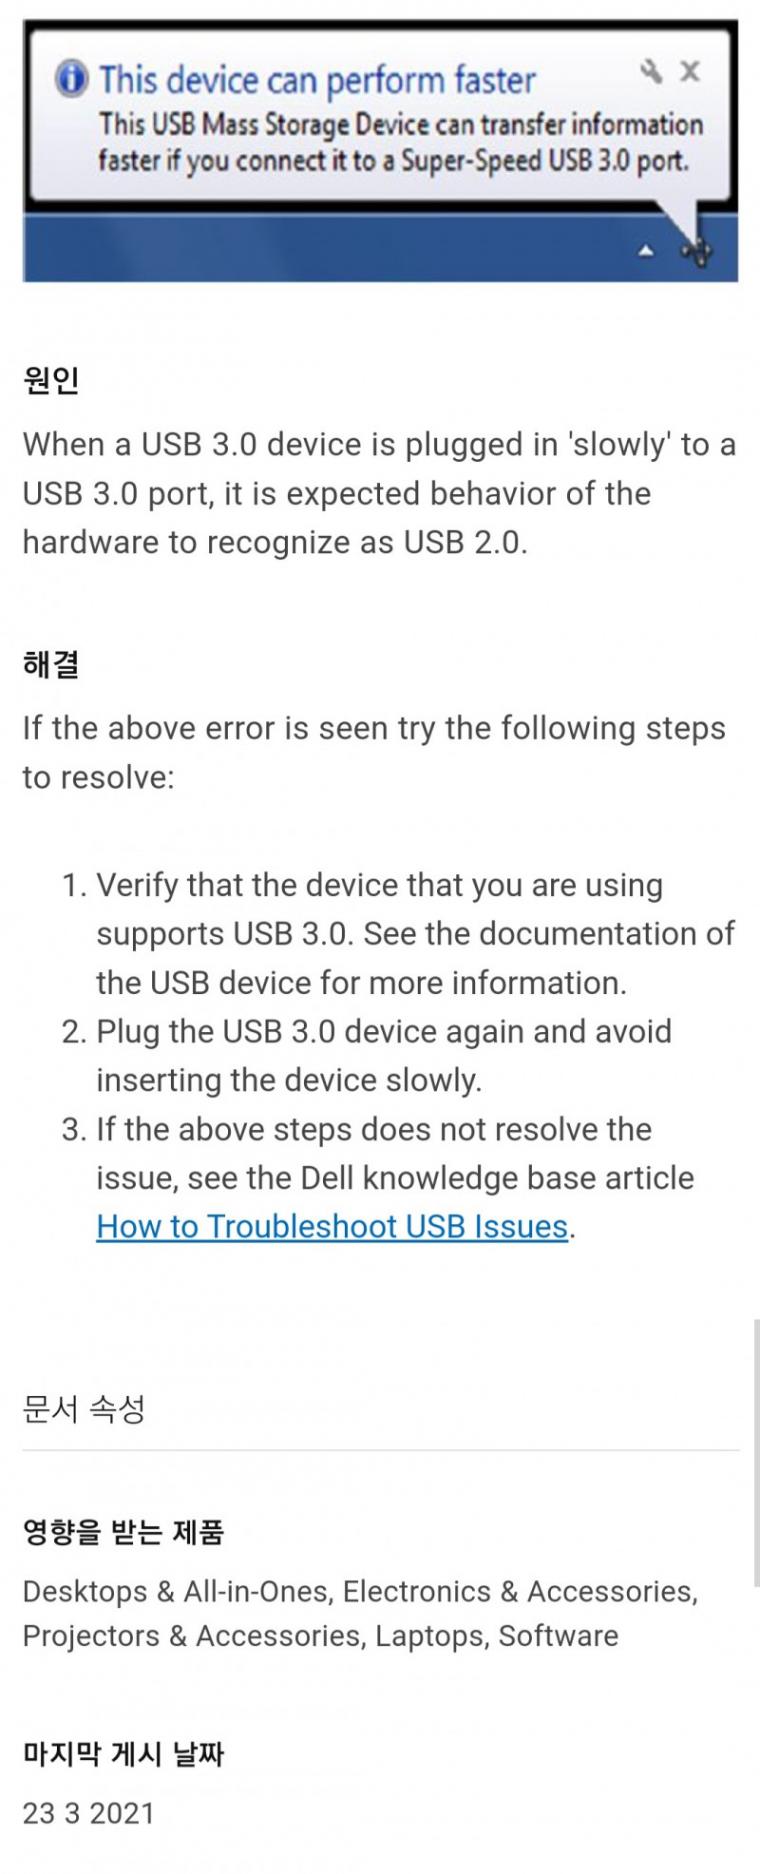 USB3.0은 천천히 끼우면 2.0으로 인식됨?